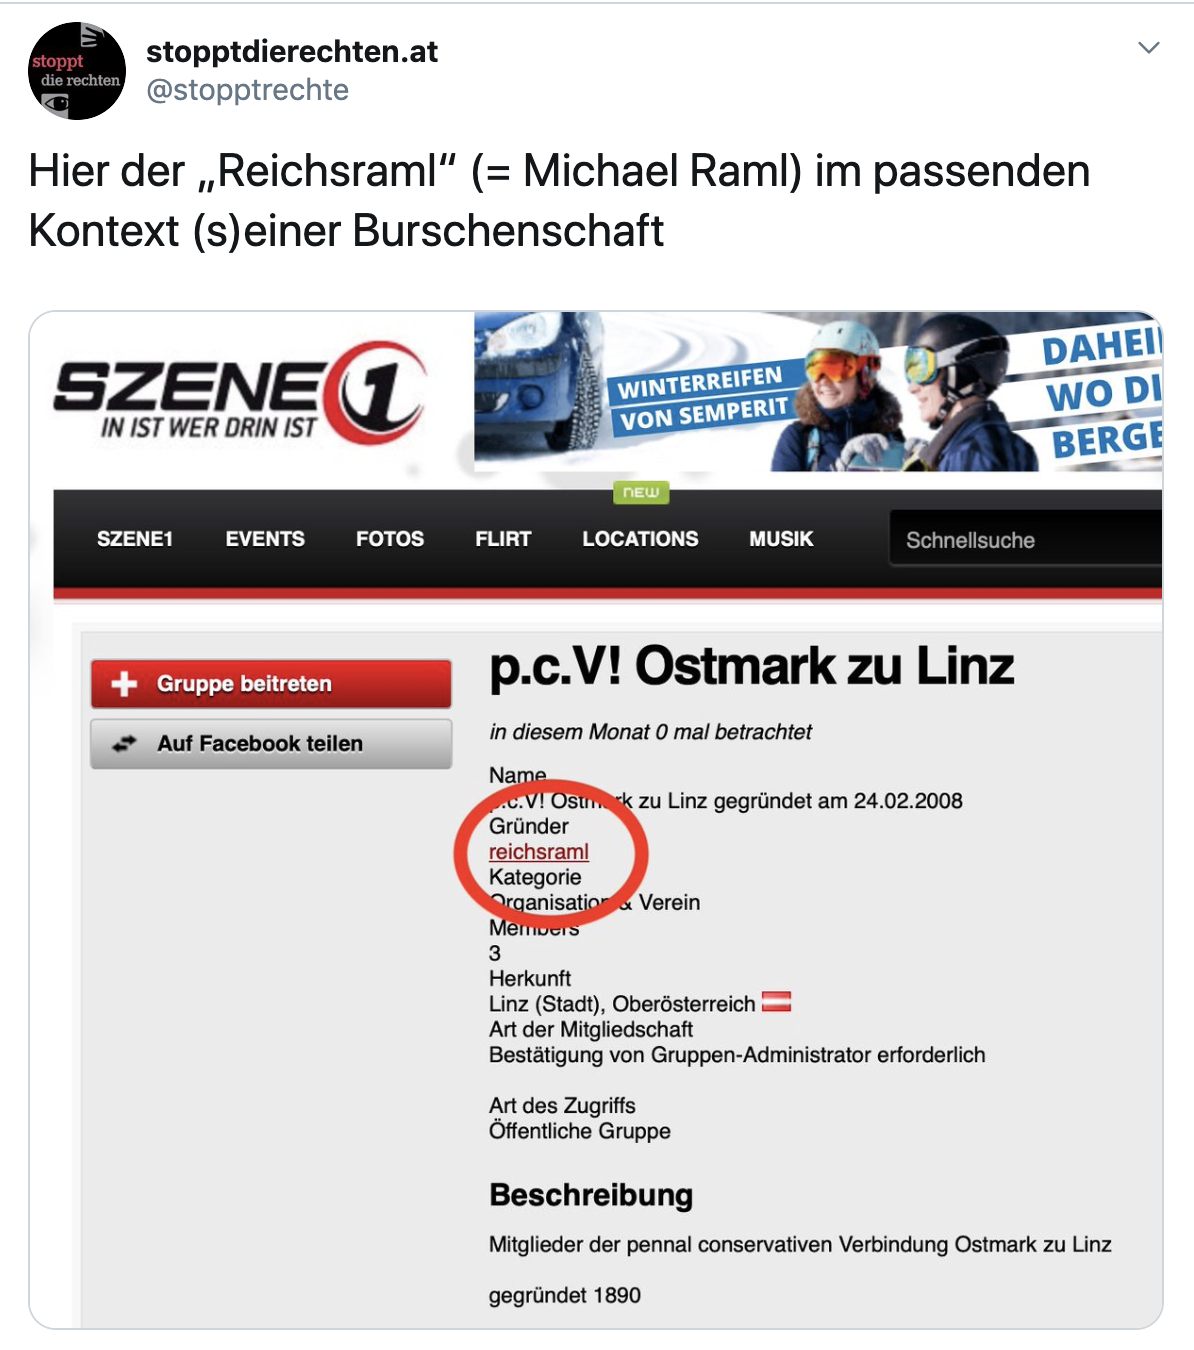 User "reichsraml" gründete auf "Szene1" die Gruppe "p.c.V! Ostmark zu Linz"